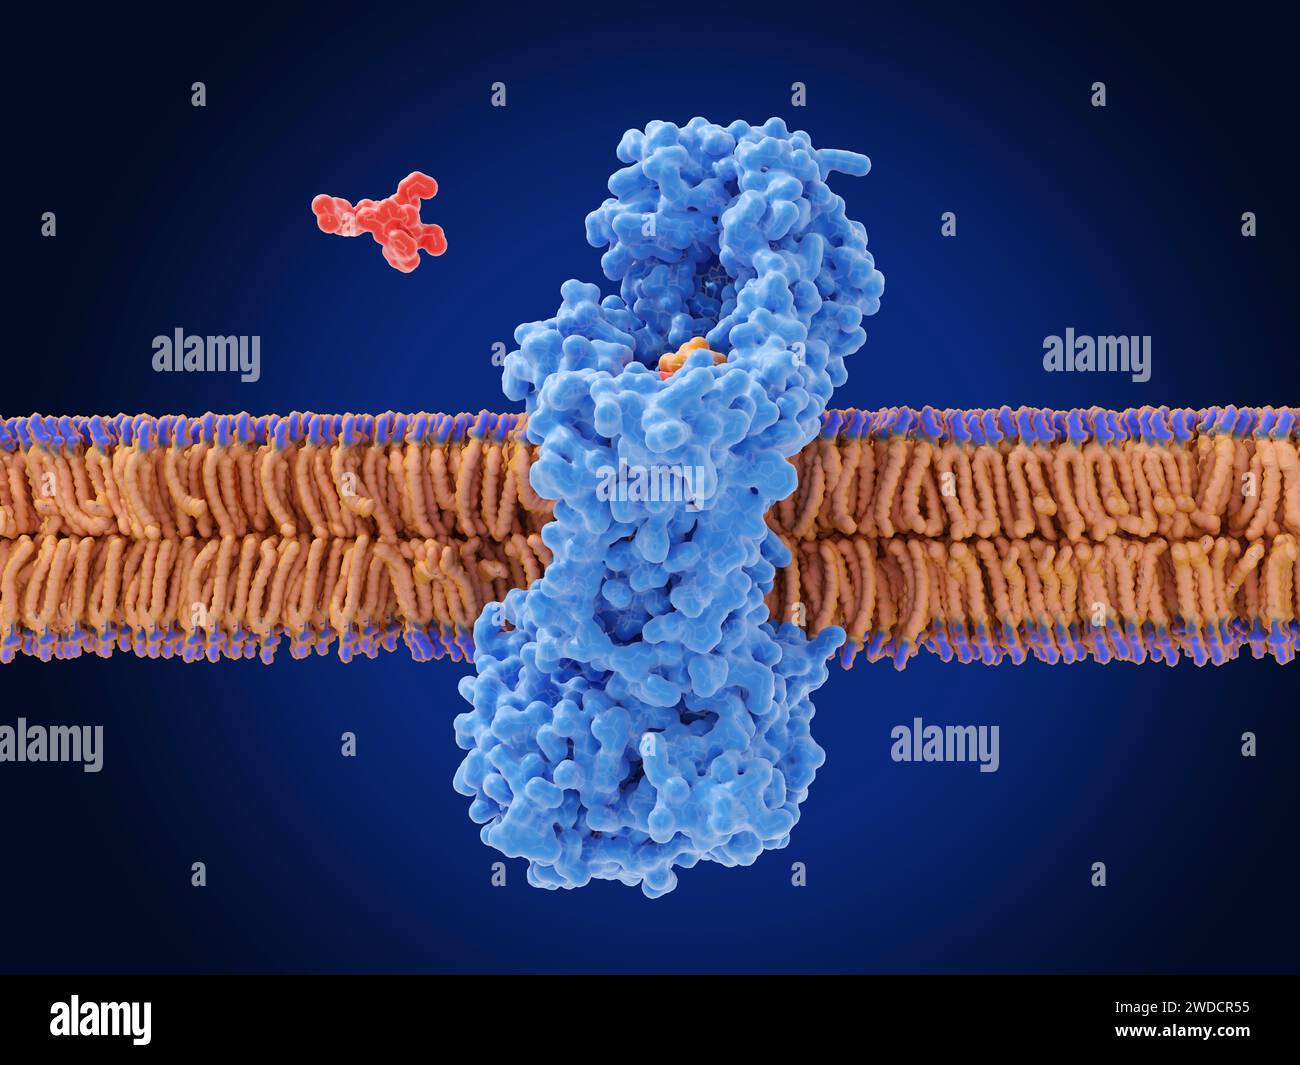 Zosurabalpin antibiotic action, illustration Stock Photo